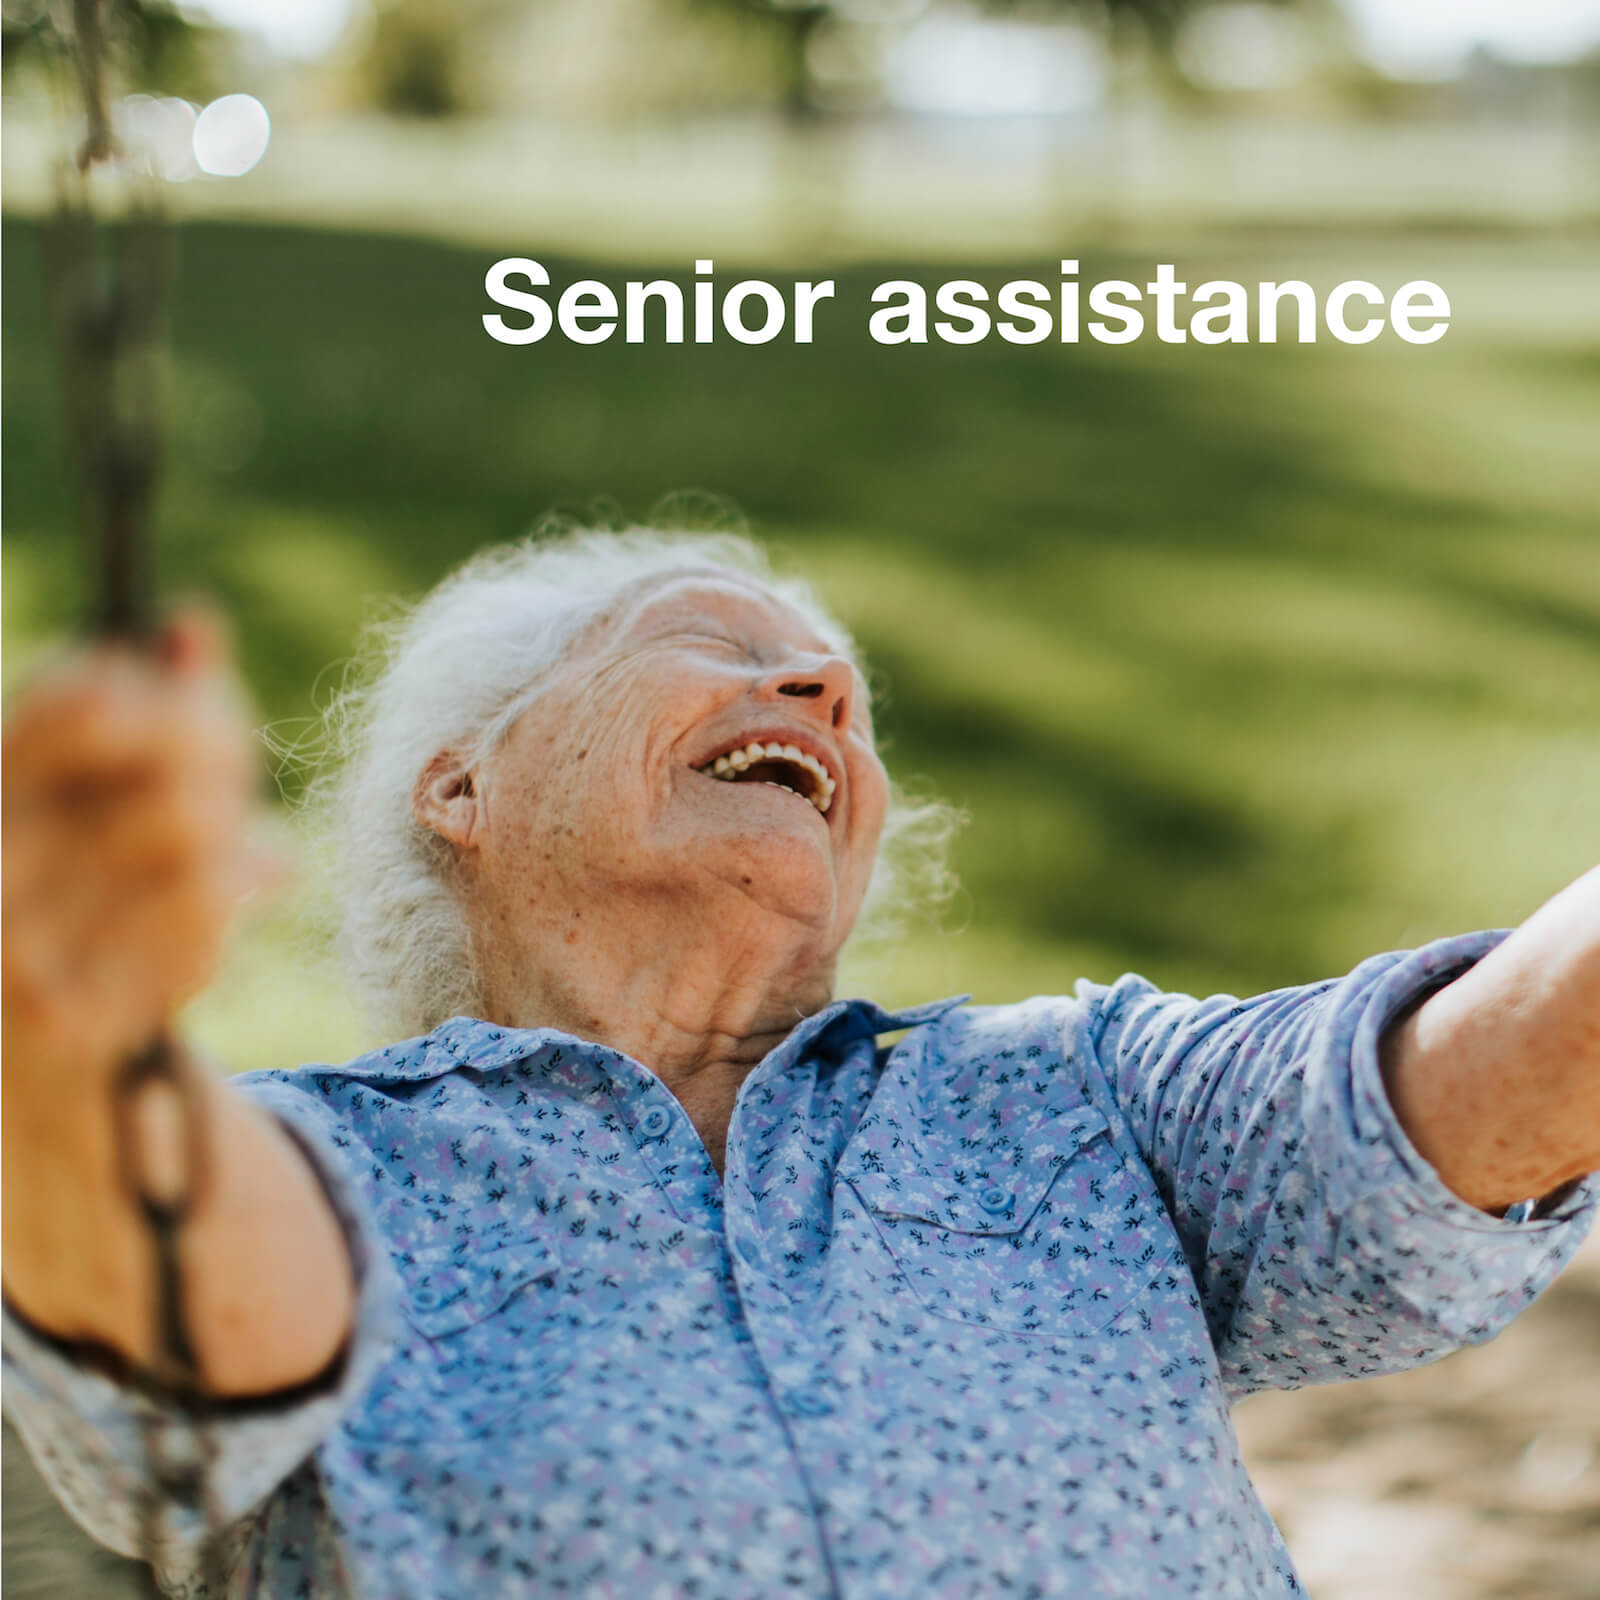 Senioren Assistenen ermöglichen Senioren einen gewohnten Tagesablauf beizubehalten. Glückliche Zeiten für alle Familienmitglieder.